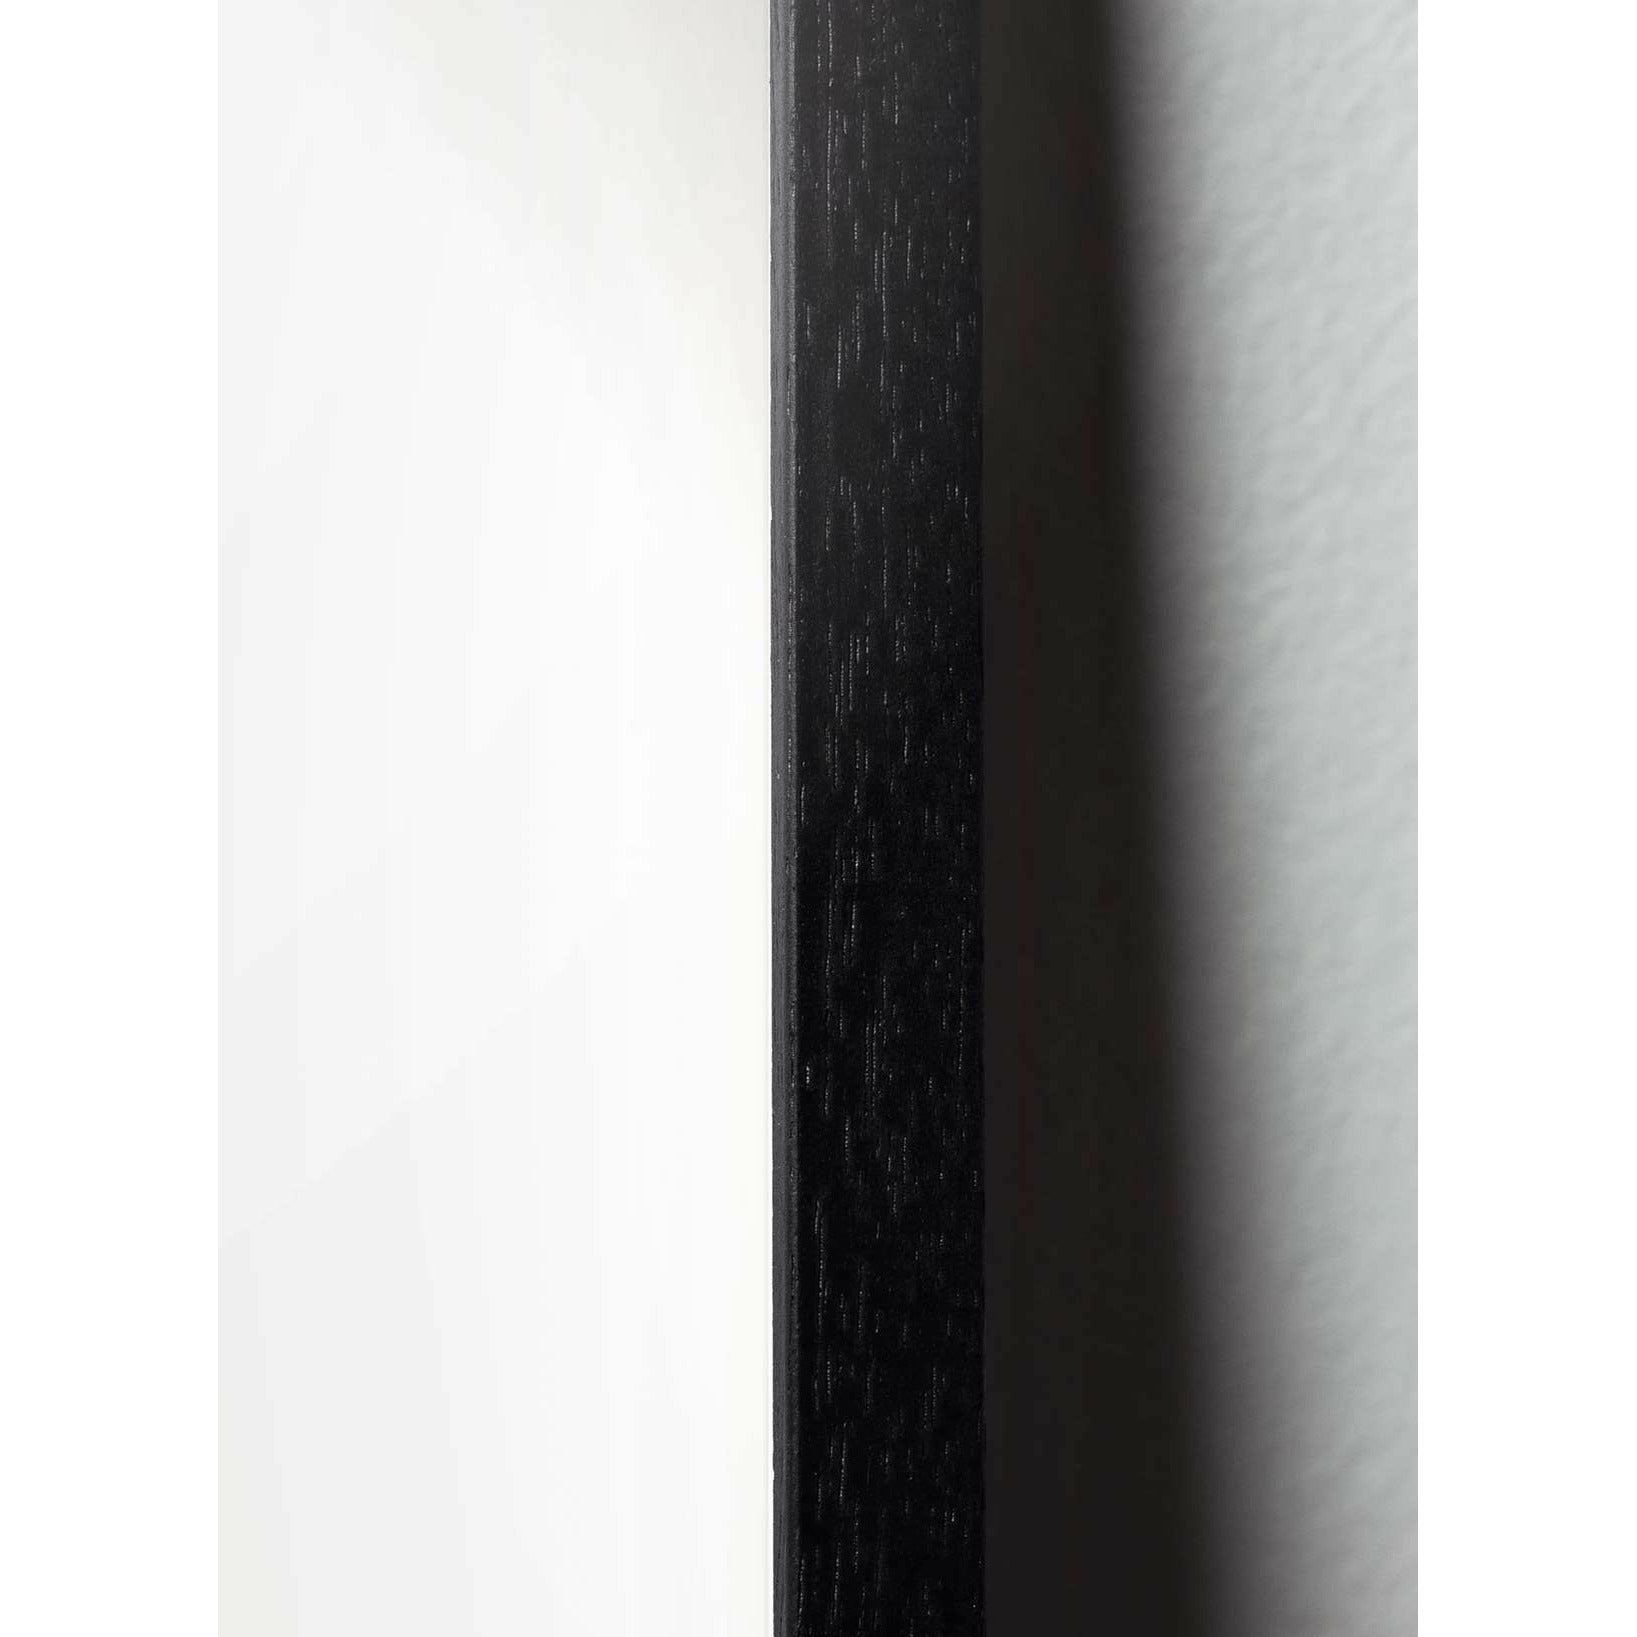 创生滴经典海报，由黑色漆木制成的框架30x40厘米，黑色背景